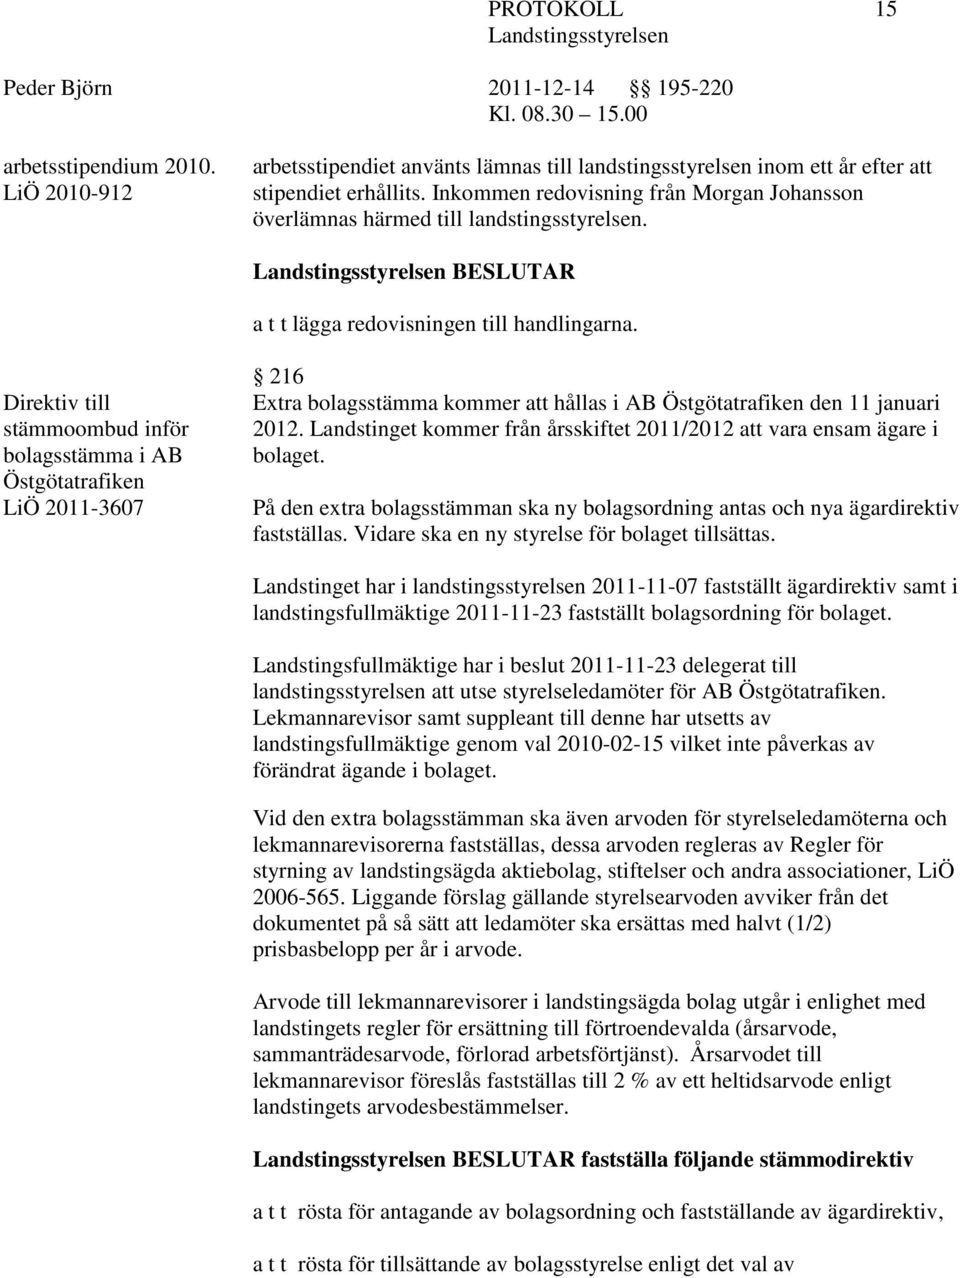 Direktiv till stämmoombud inför bolagsstämma i AB Östgötatrafiken LiÖ 2011-3607 216 Extra bolagsstämma kommer att hållas i AB Östgötatrafiken den 11 januari 2012.